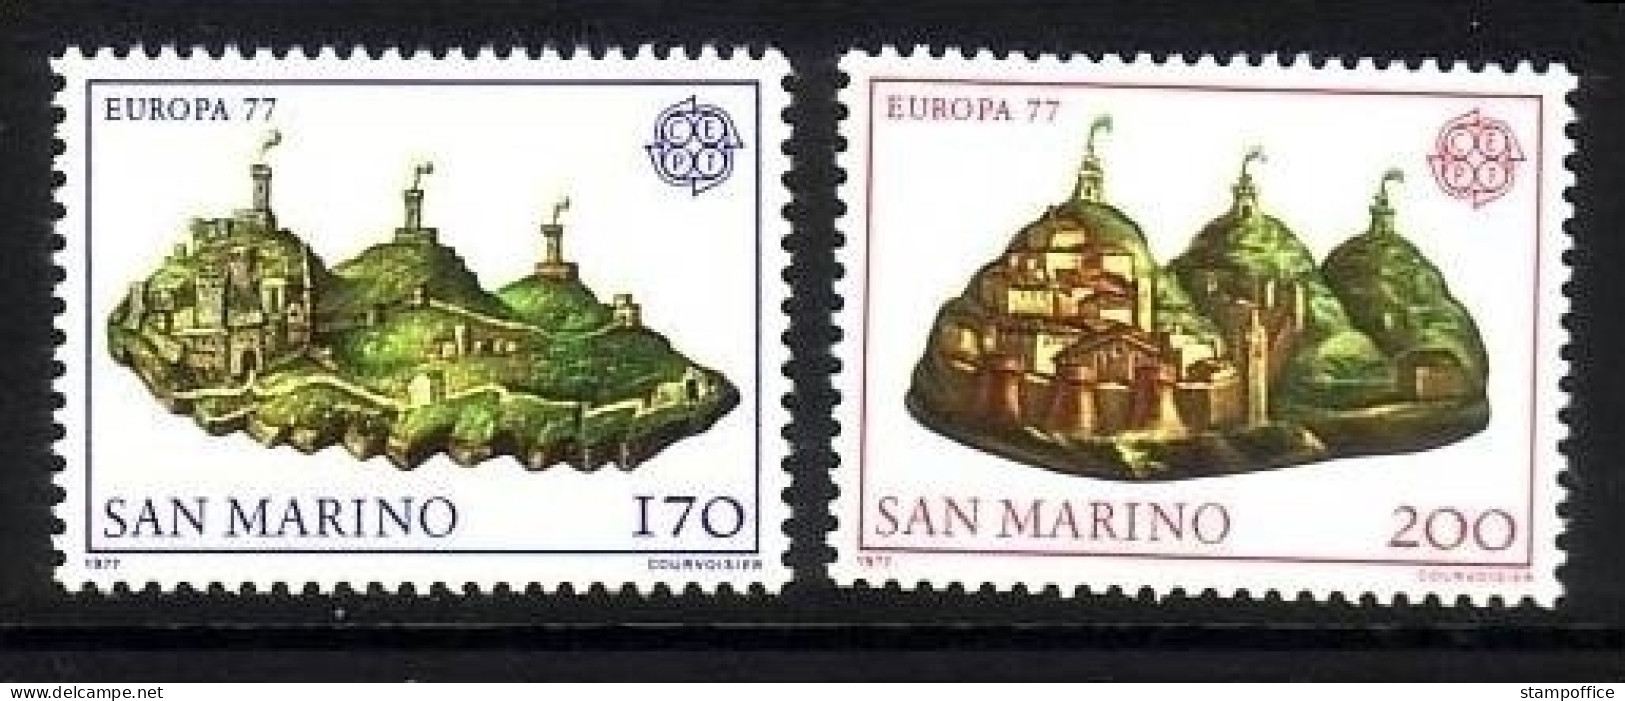 SAN MARINO MI-NR. 1131-1132 POSTFRISCH(MINT) EUROPA 1977 - LANDSCHAFTEN - 1977